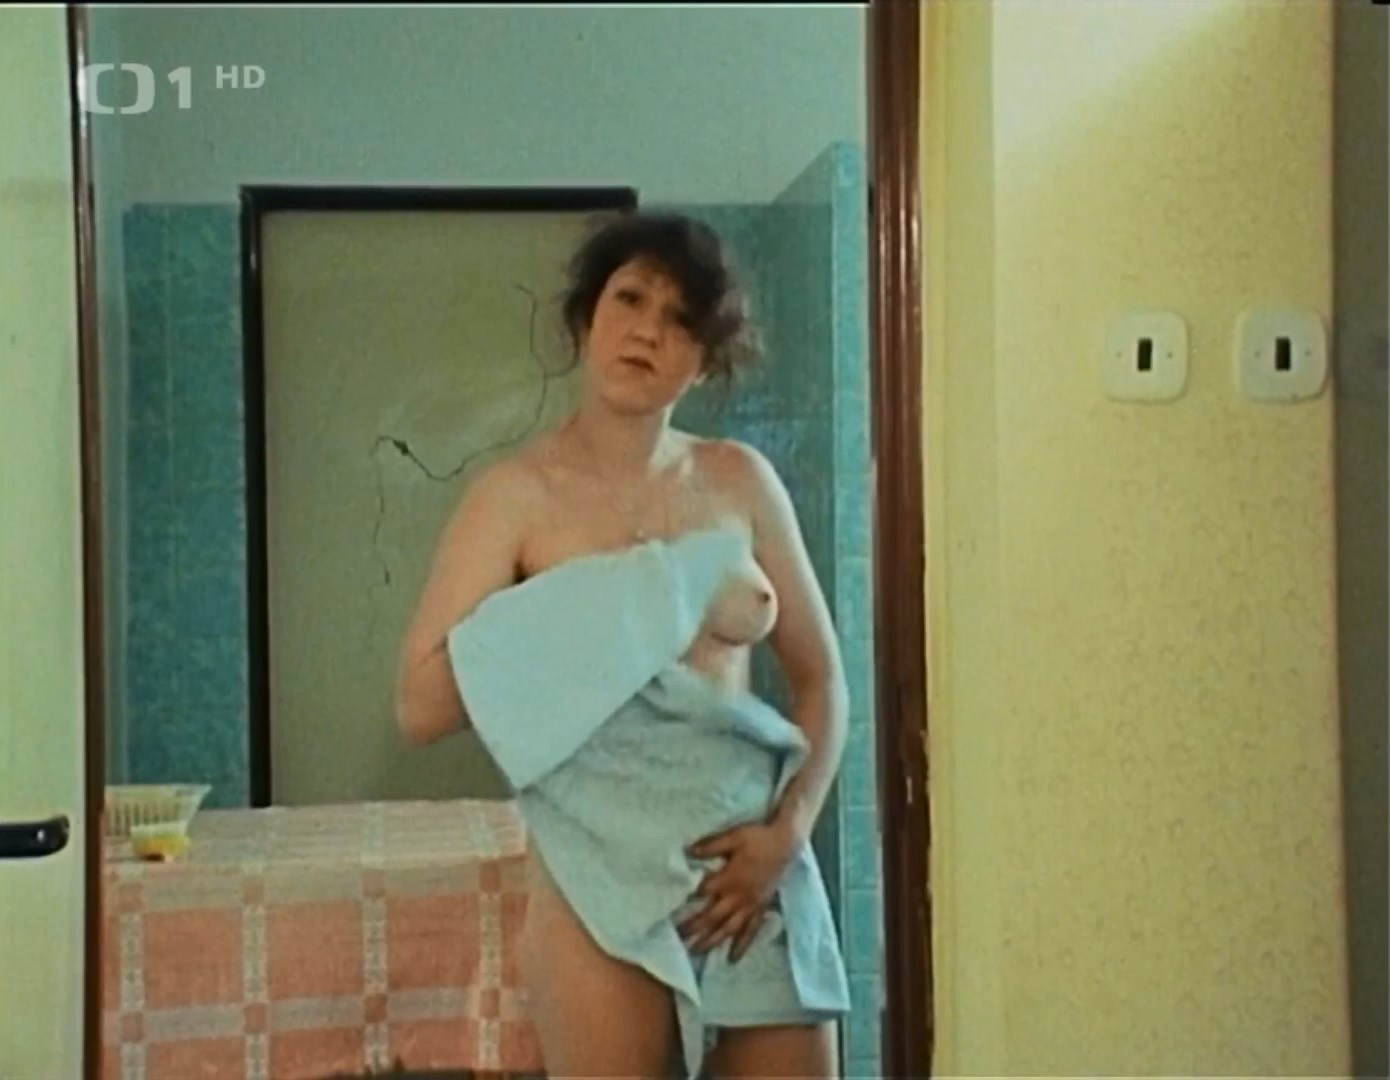 Nude Video Celebs Jana Matiaskova Nude Druhy Dech S01e08 1988 6403